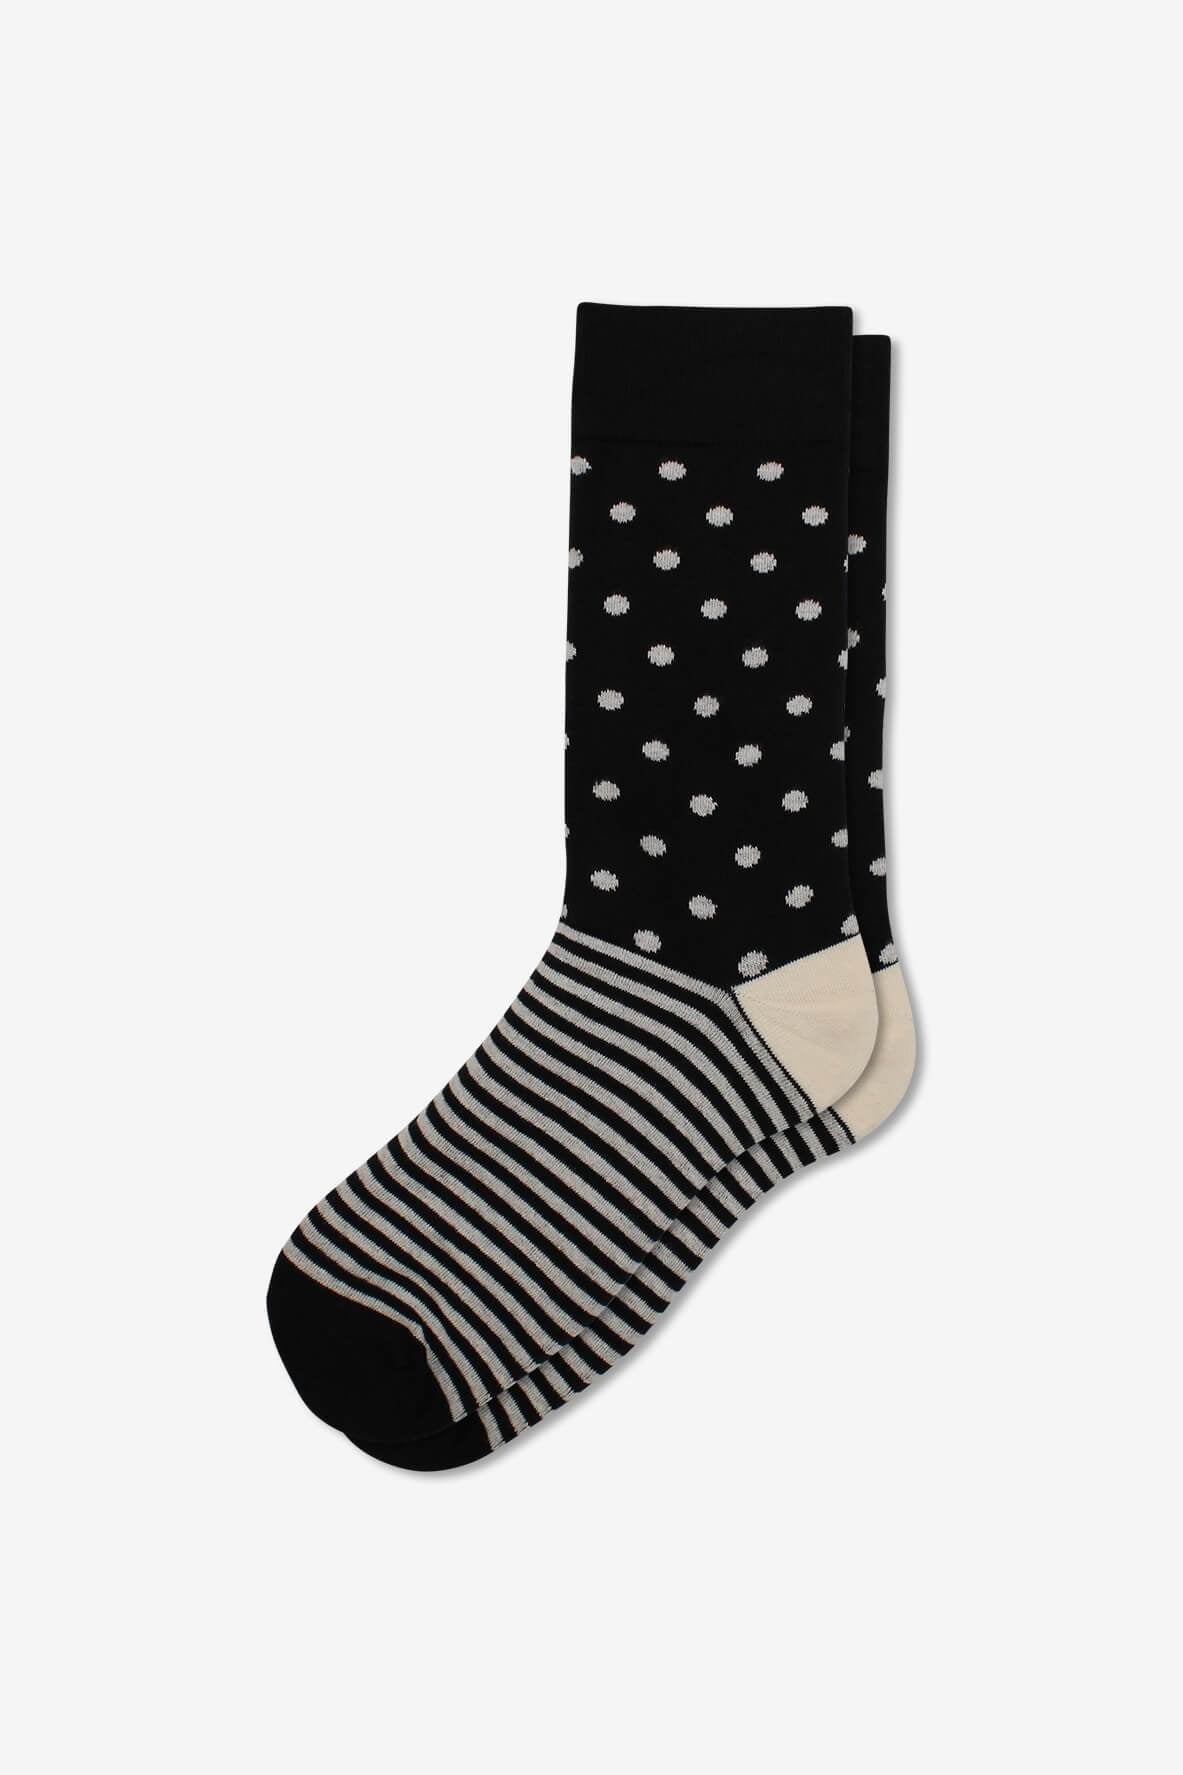 Socks IMG_5336, socks, GoTie